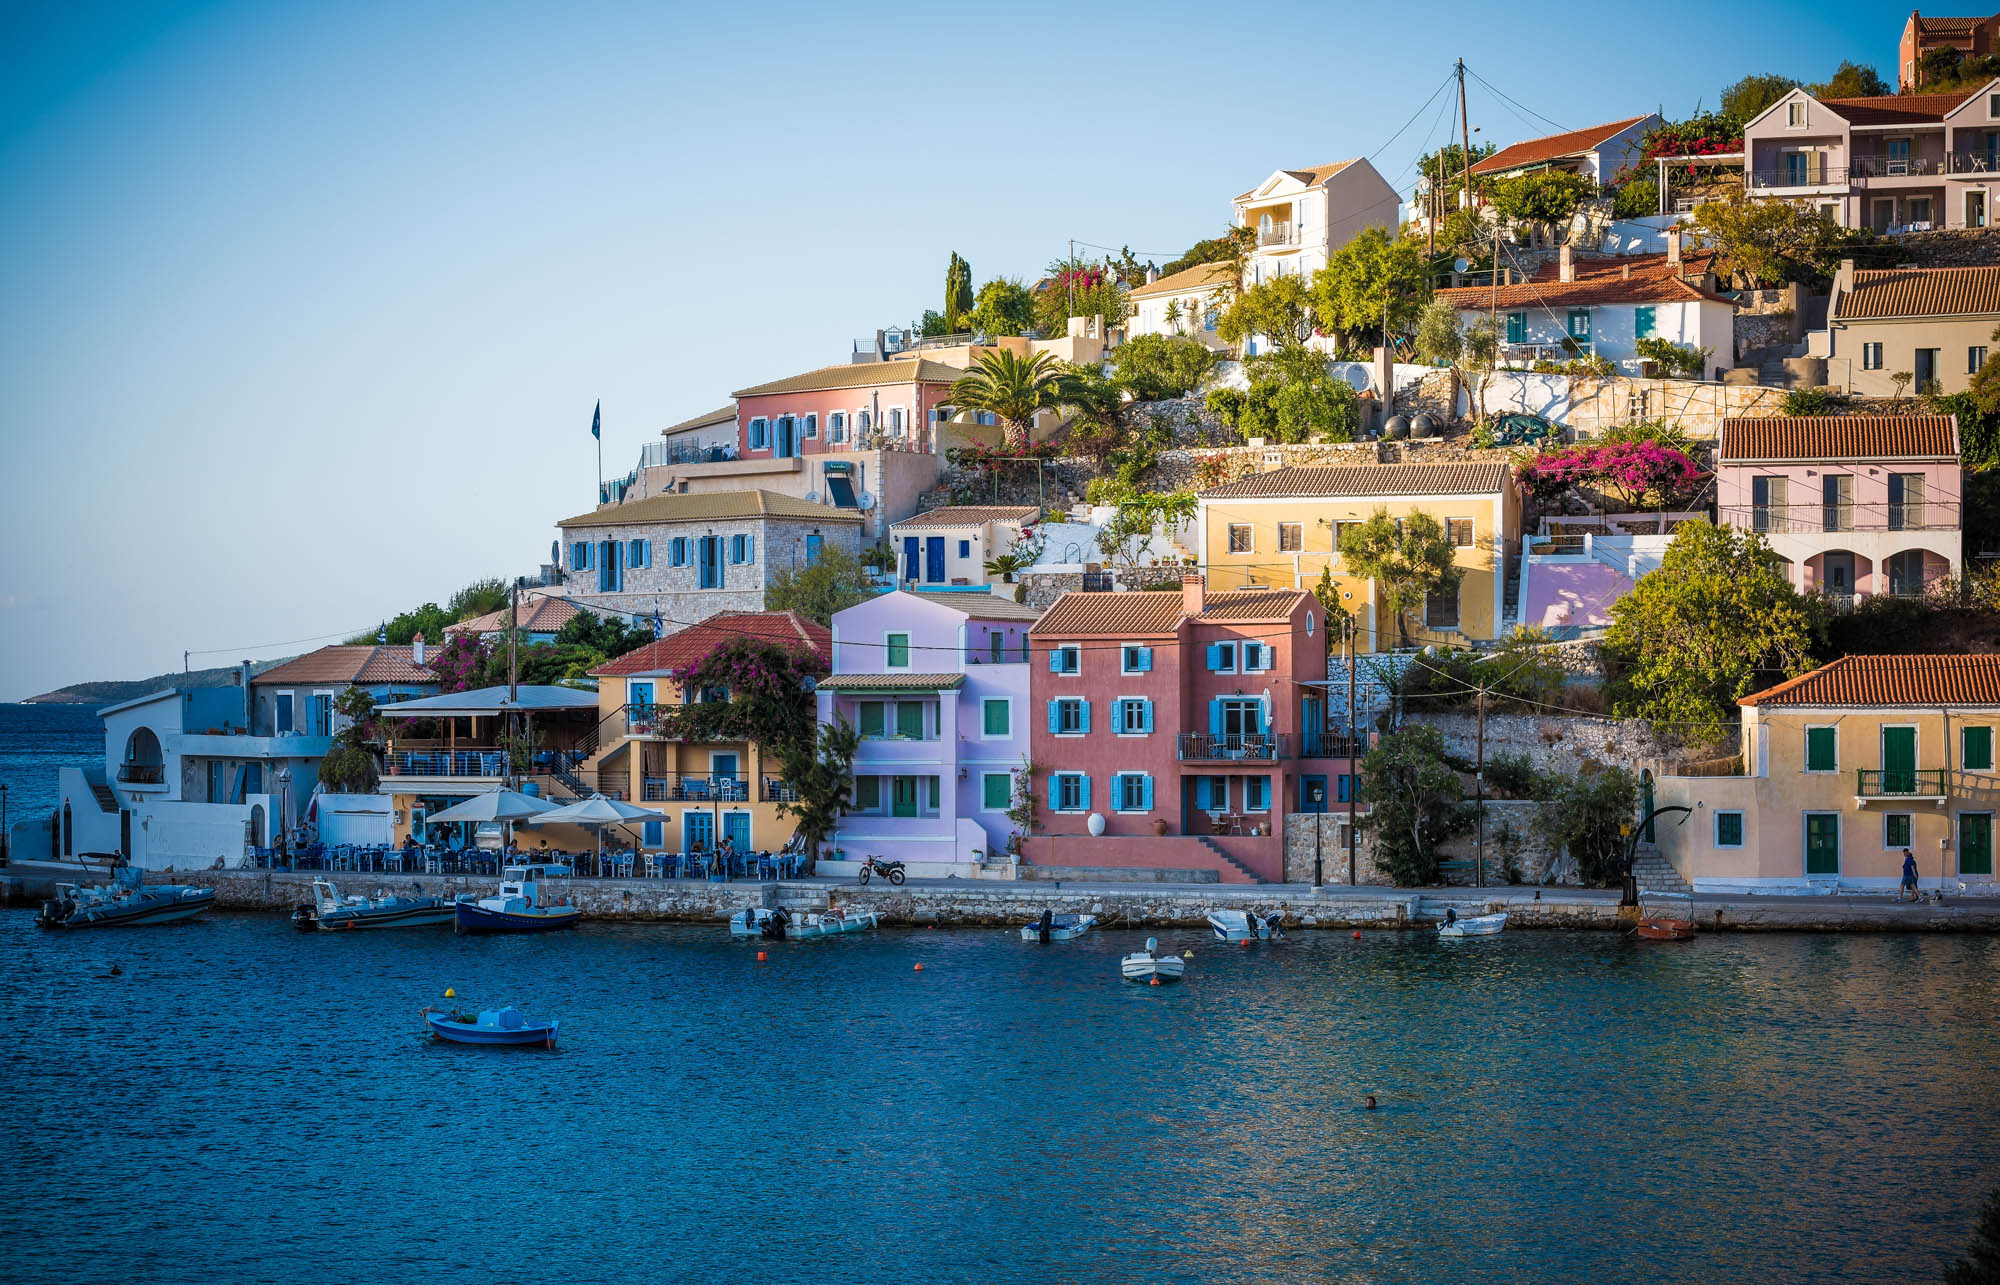 piękne kreckie miasteczko w zatoce, kolorowe domki i niebieska woda